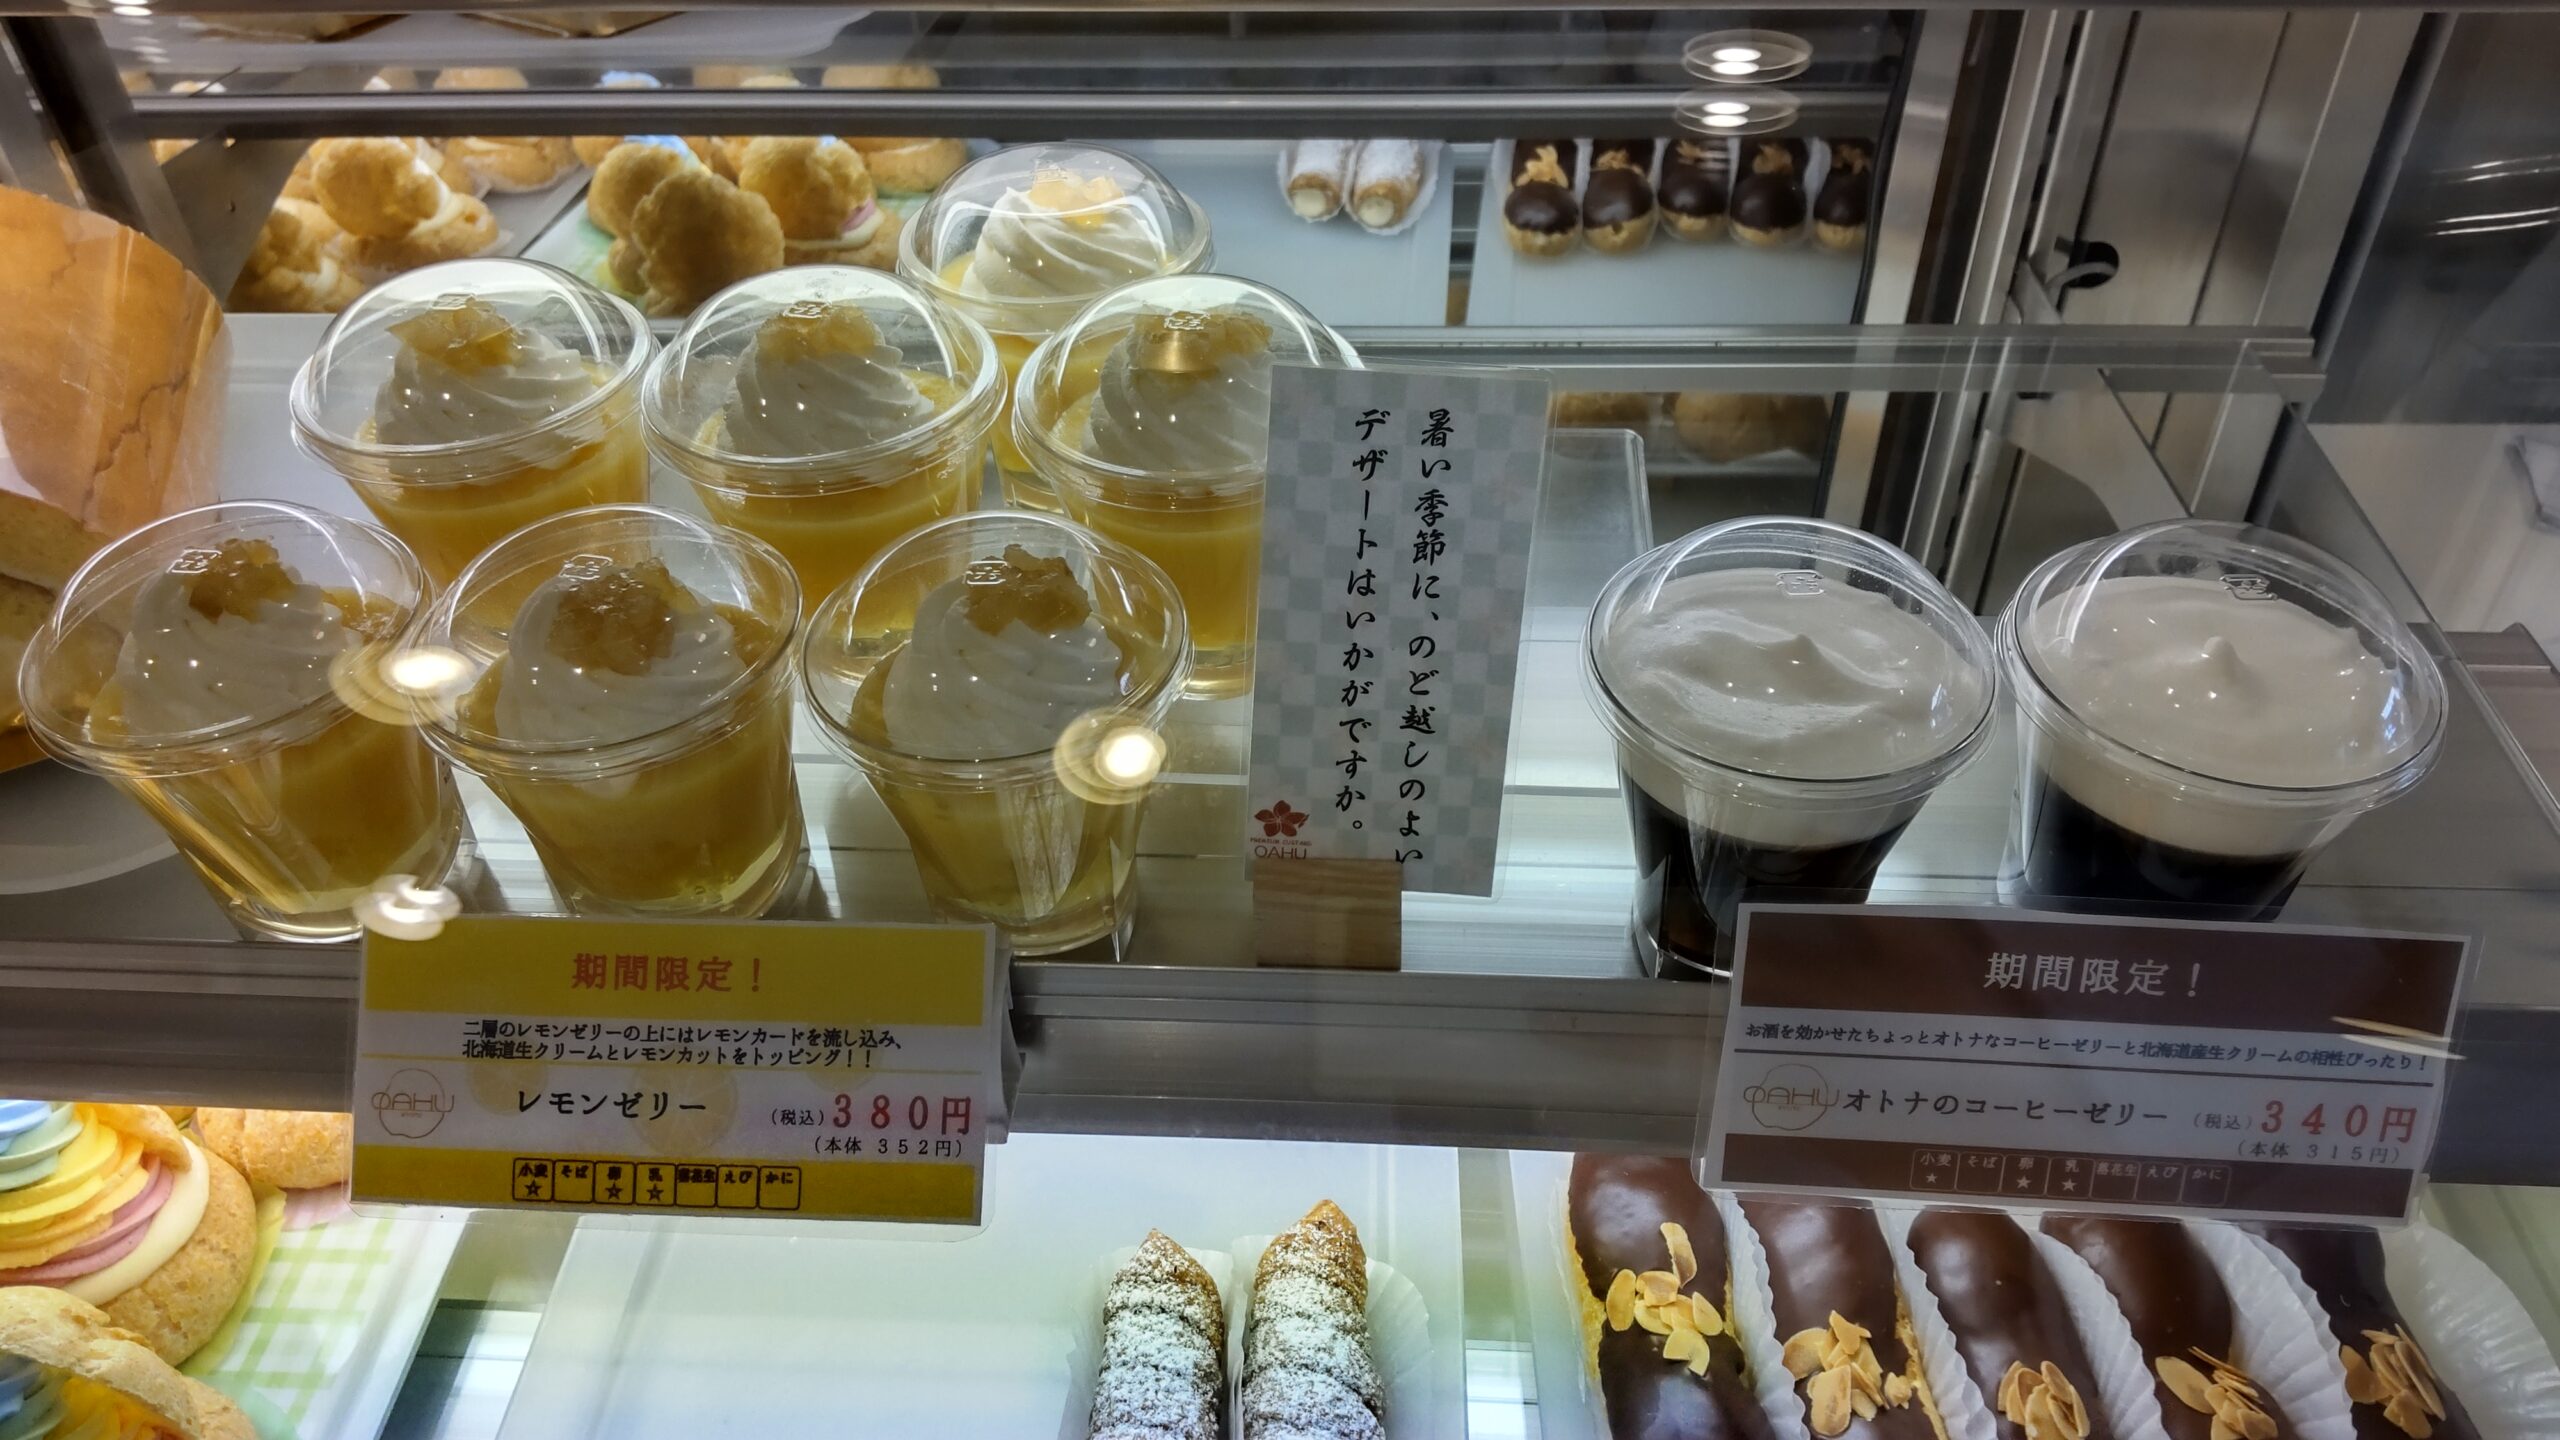 今出川の オアフ はシュークリームもロールケーキもお手頃価格で便利なお店 京都ストーリー